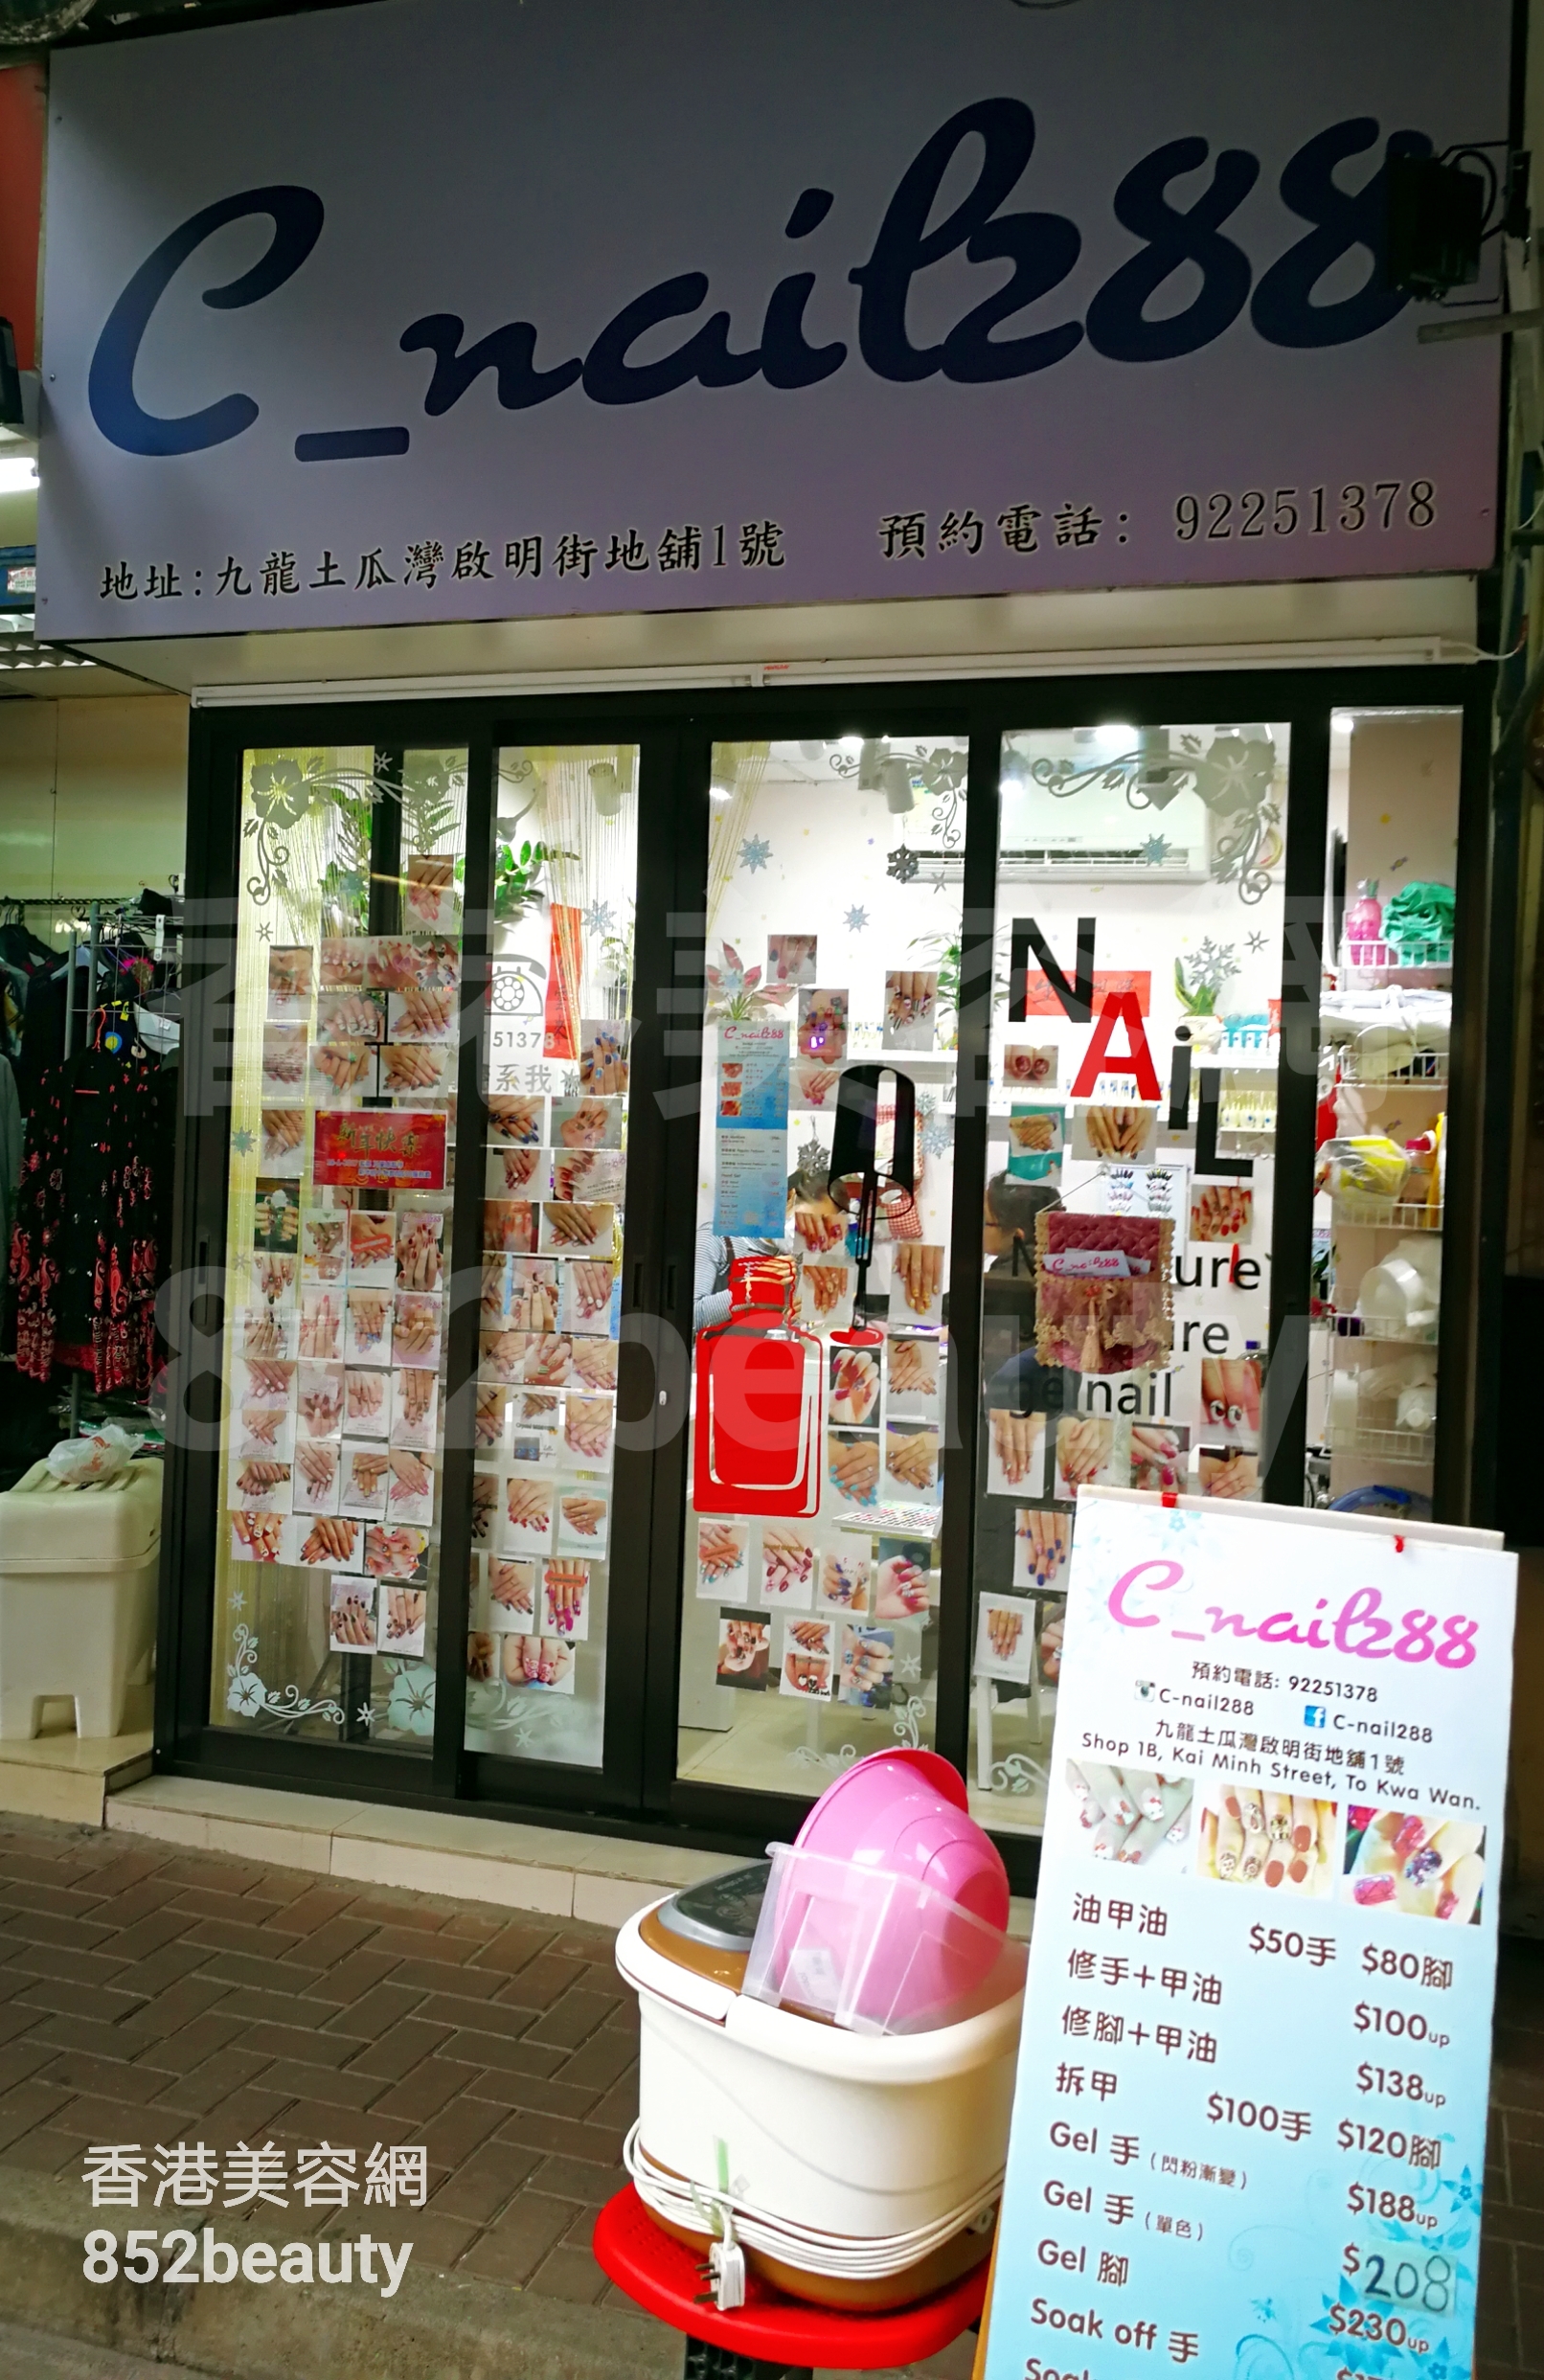 香港美容網 Hong Kong Beauty Salon 美容院 / 美容師: C_Nail288 (啟明街店)